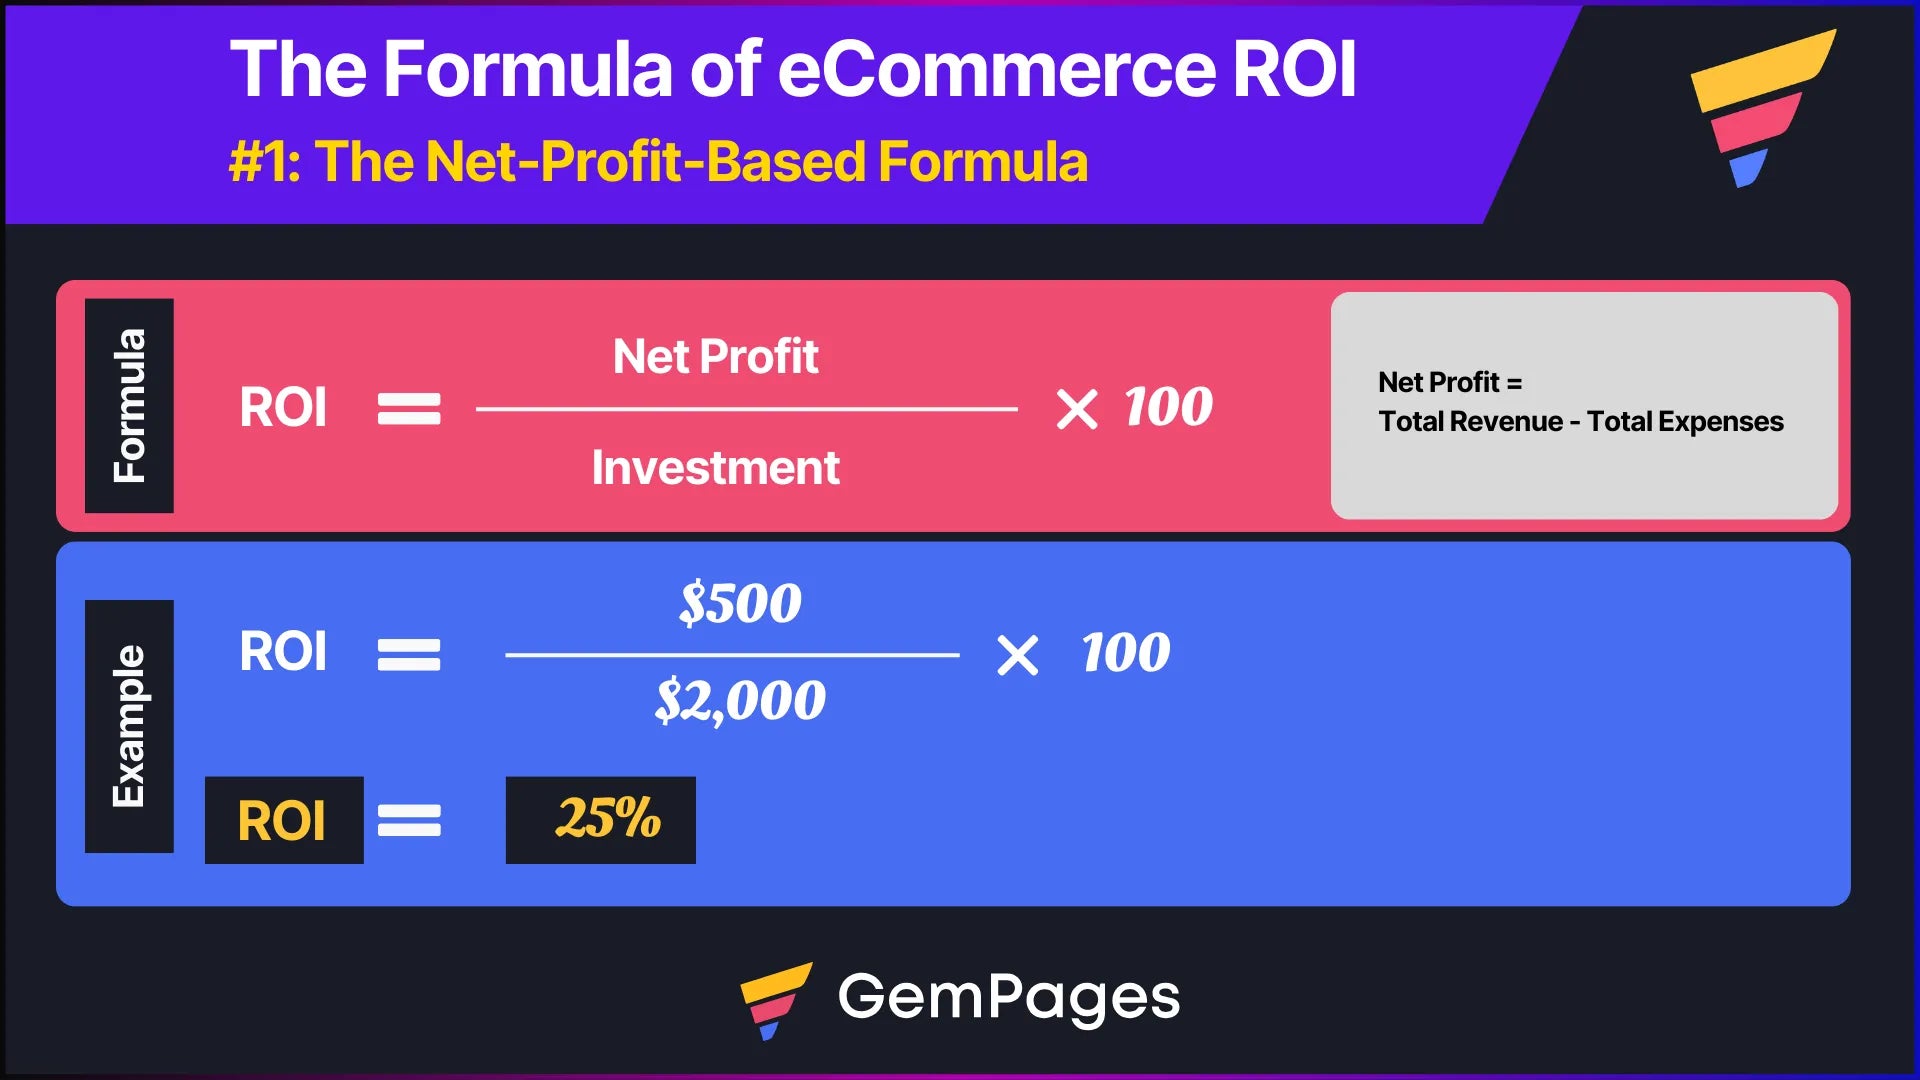 The formula of eCommerce ROI based on net profit calculation